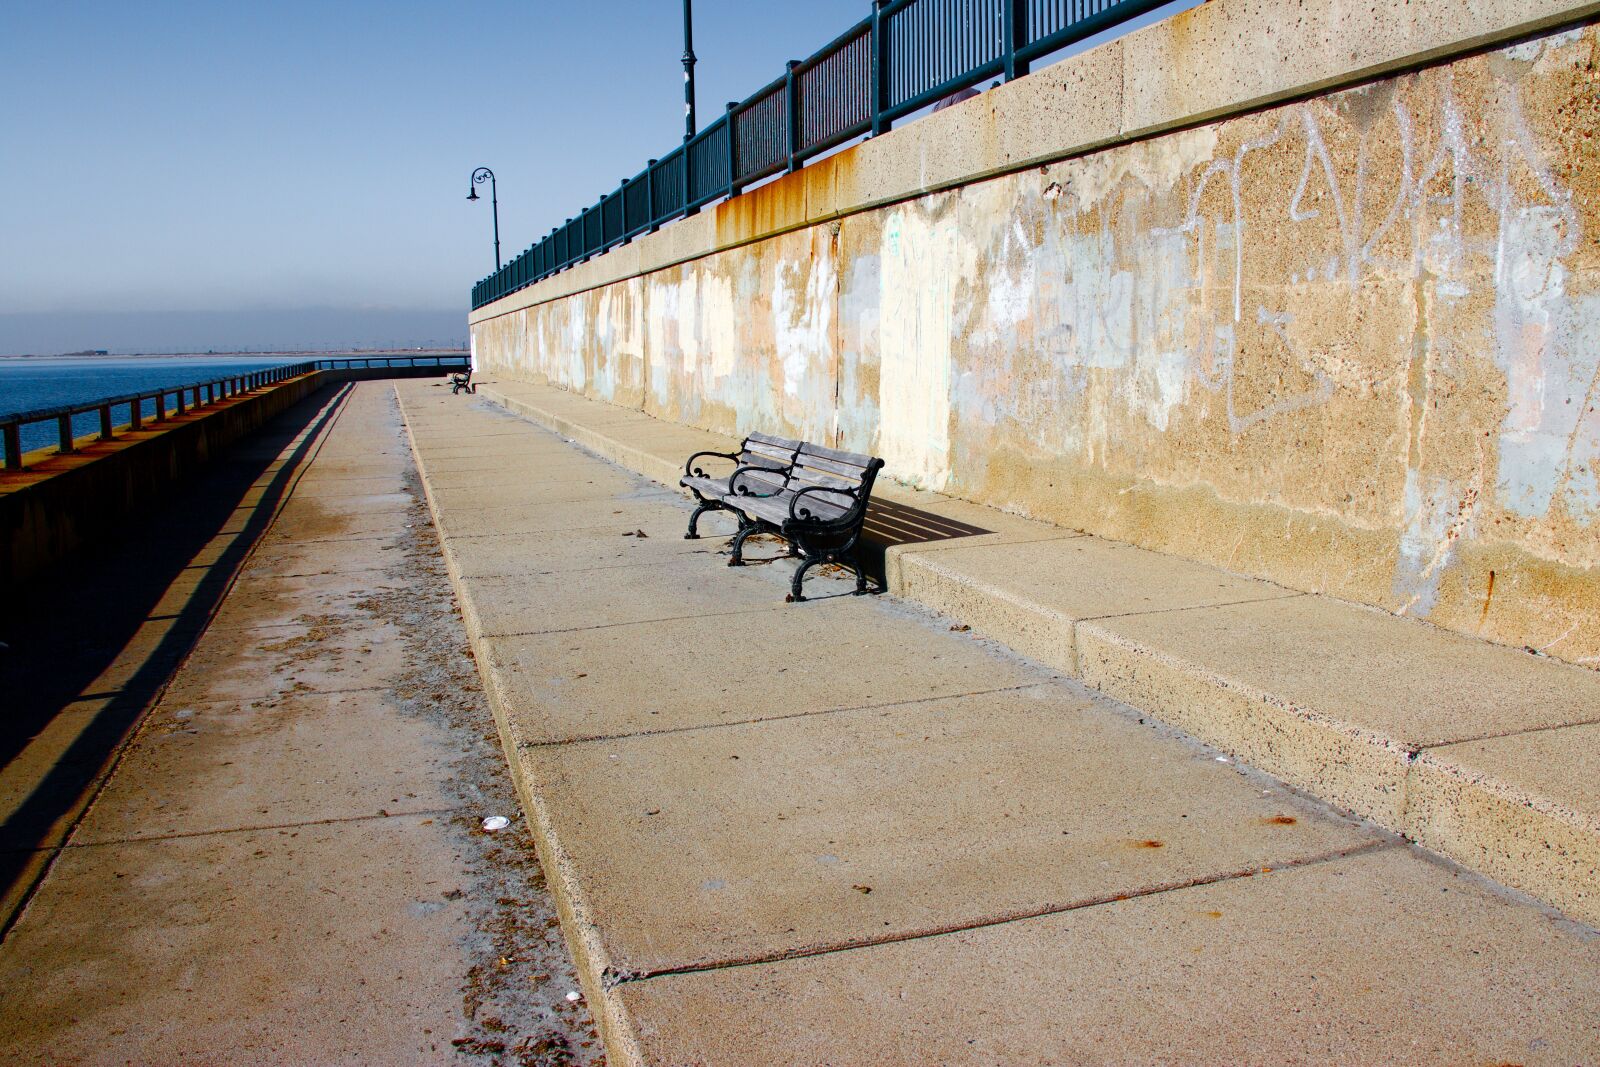 Canon EOS 800D (EOS Rebel T7i / EOS Kiss X9i) sample photo. Bench, ocean, desolate photography